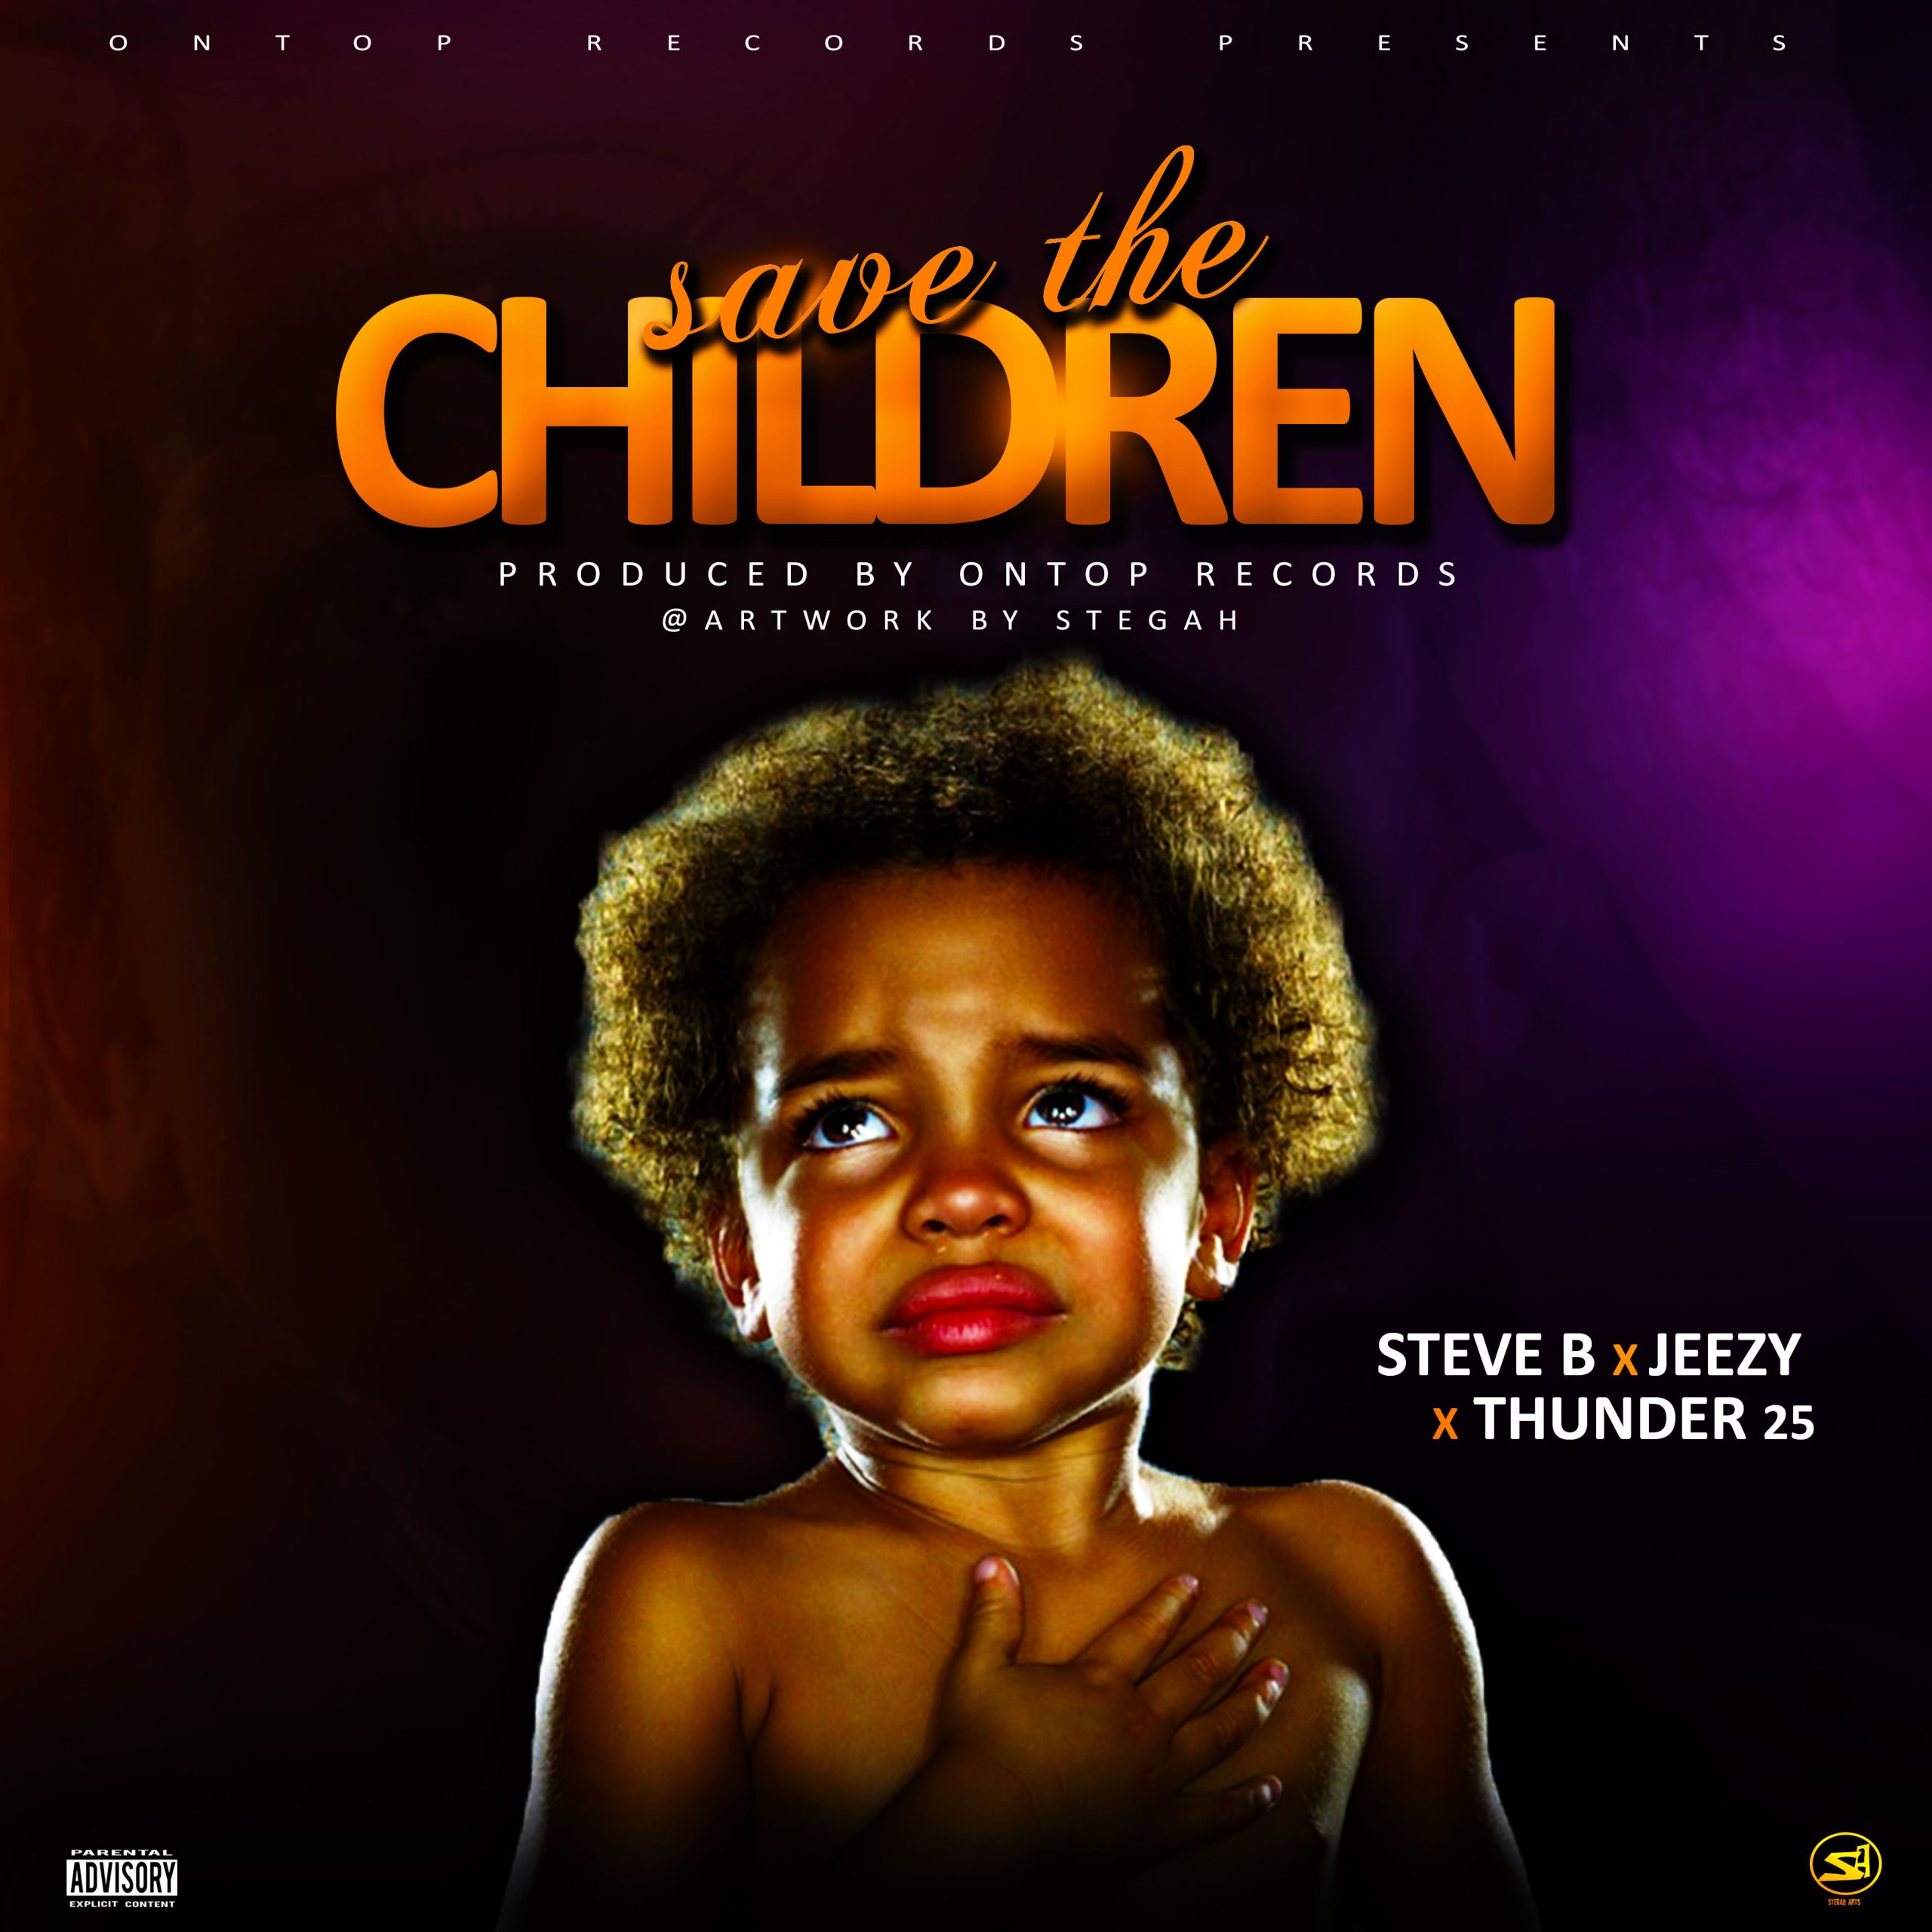 Steve-B-x-Jeezy-x-Thunder25-Save-the-Children-prod-by-ontop